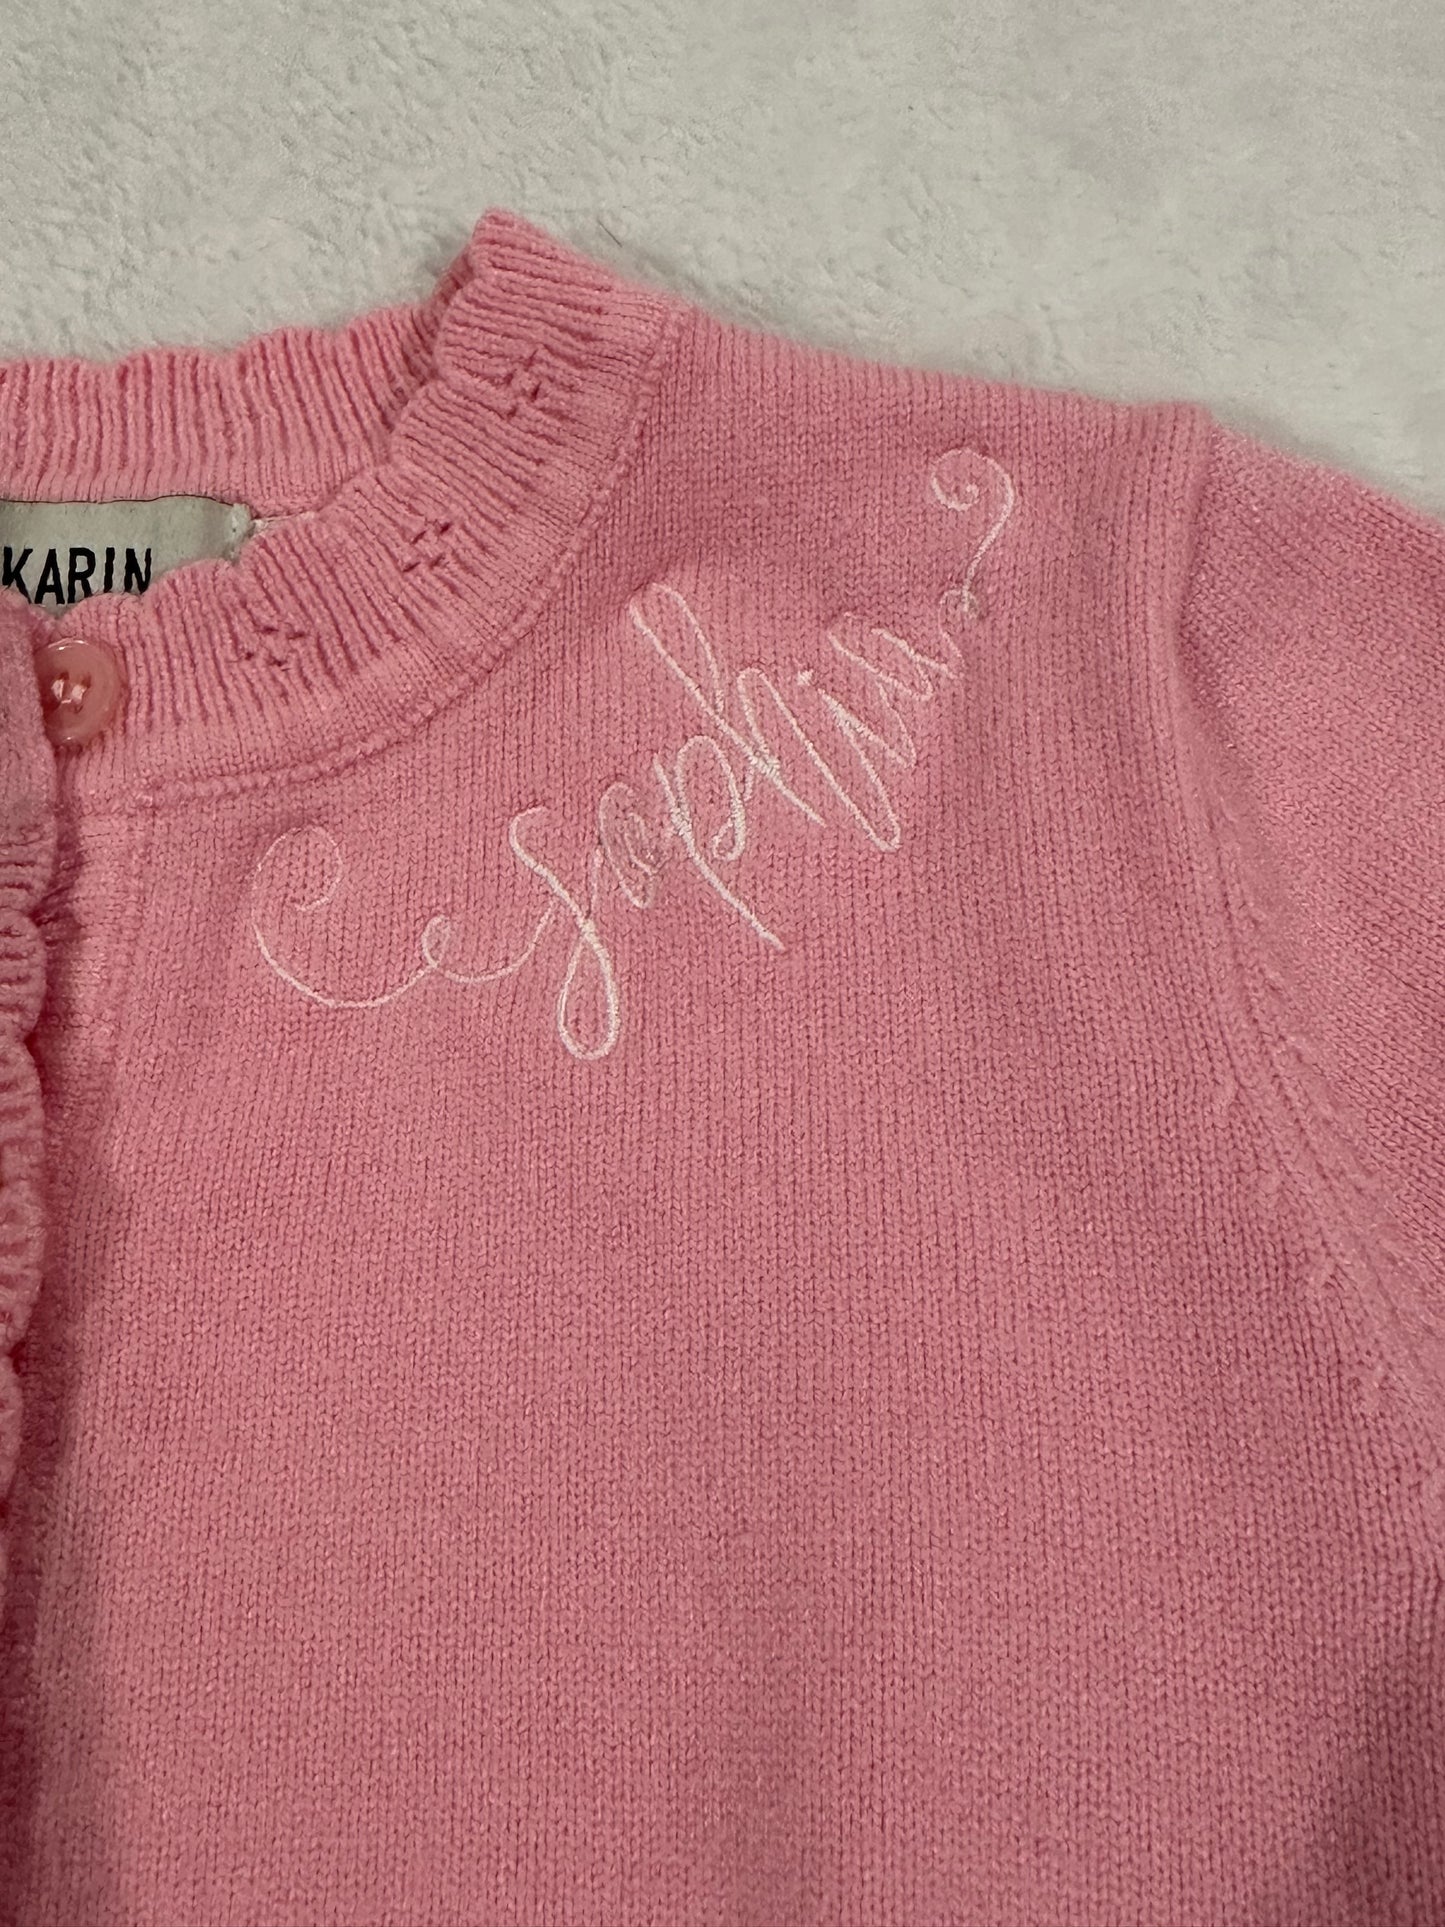 Girls 3T Grace Karin pink cardigan with Sophia monogram